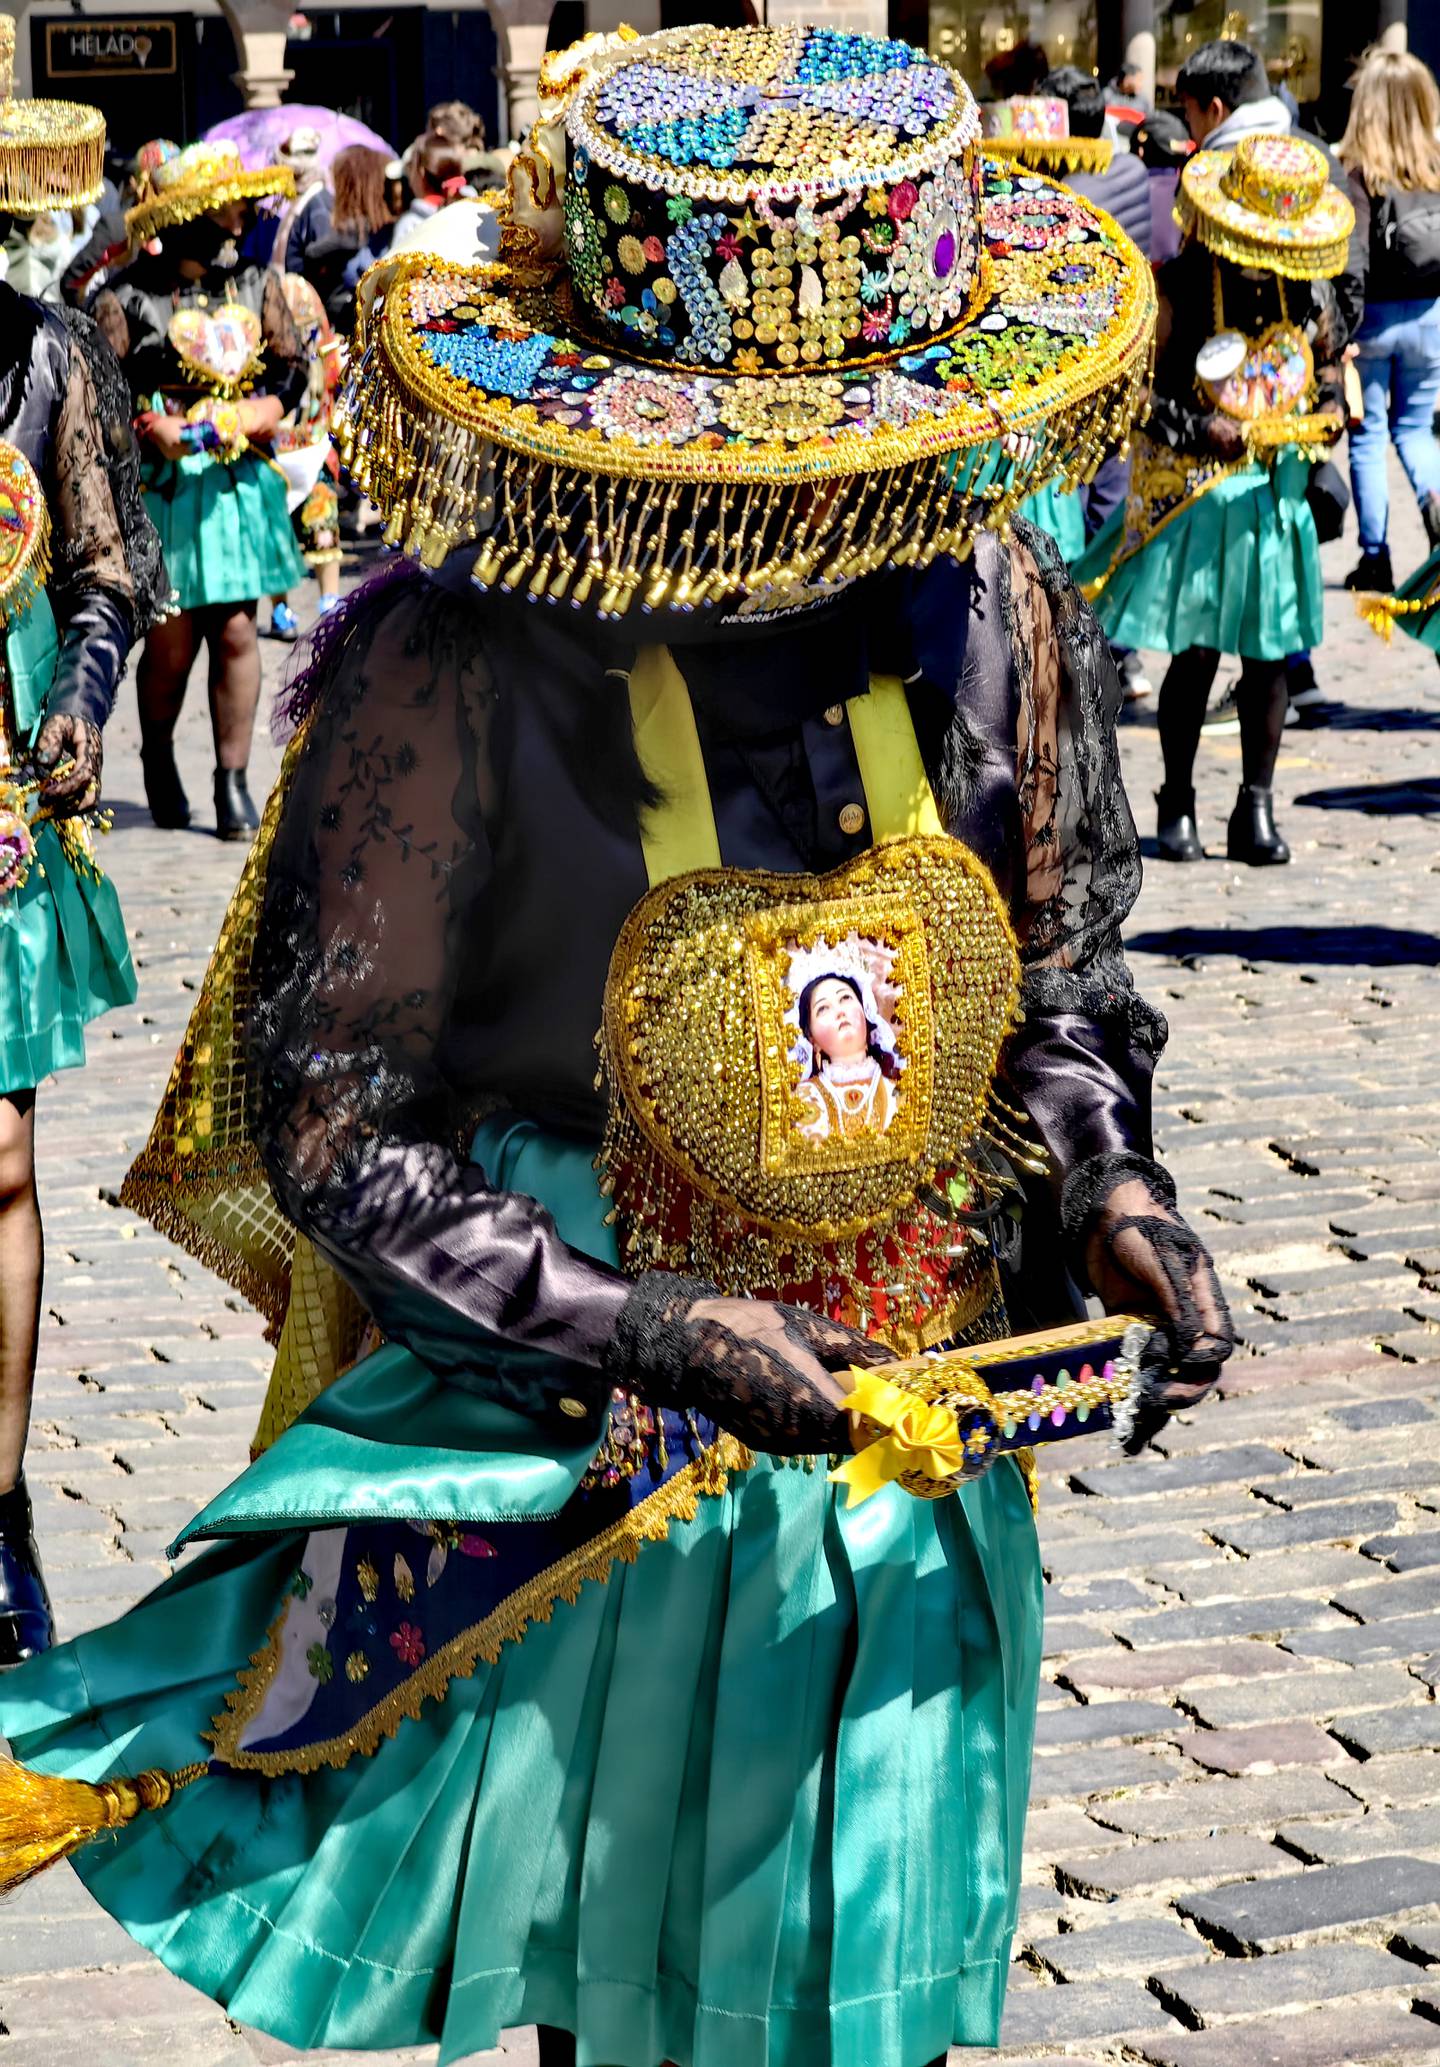 Cusco tiene una hibridación contemporánea, religiosa, colonial y originaria que se refleja en los trajes de las comparsas folclóricas. Comparsa de la festividad de la Virgen de la Ascención.